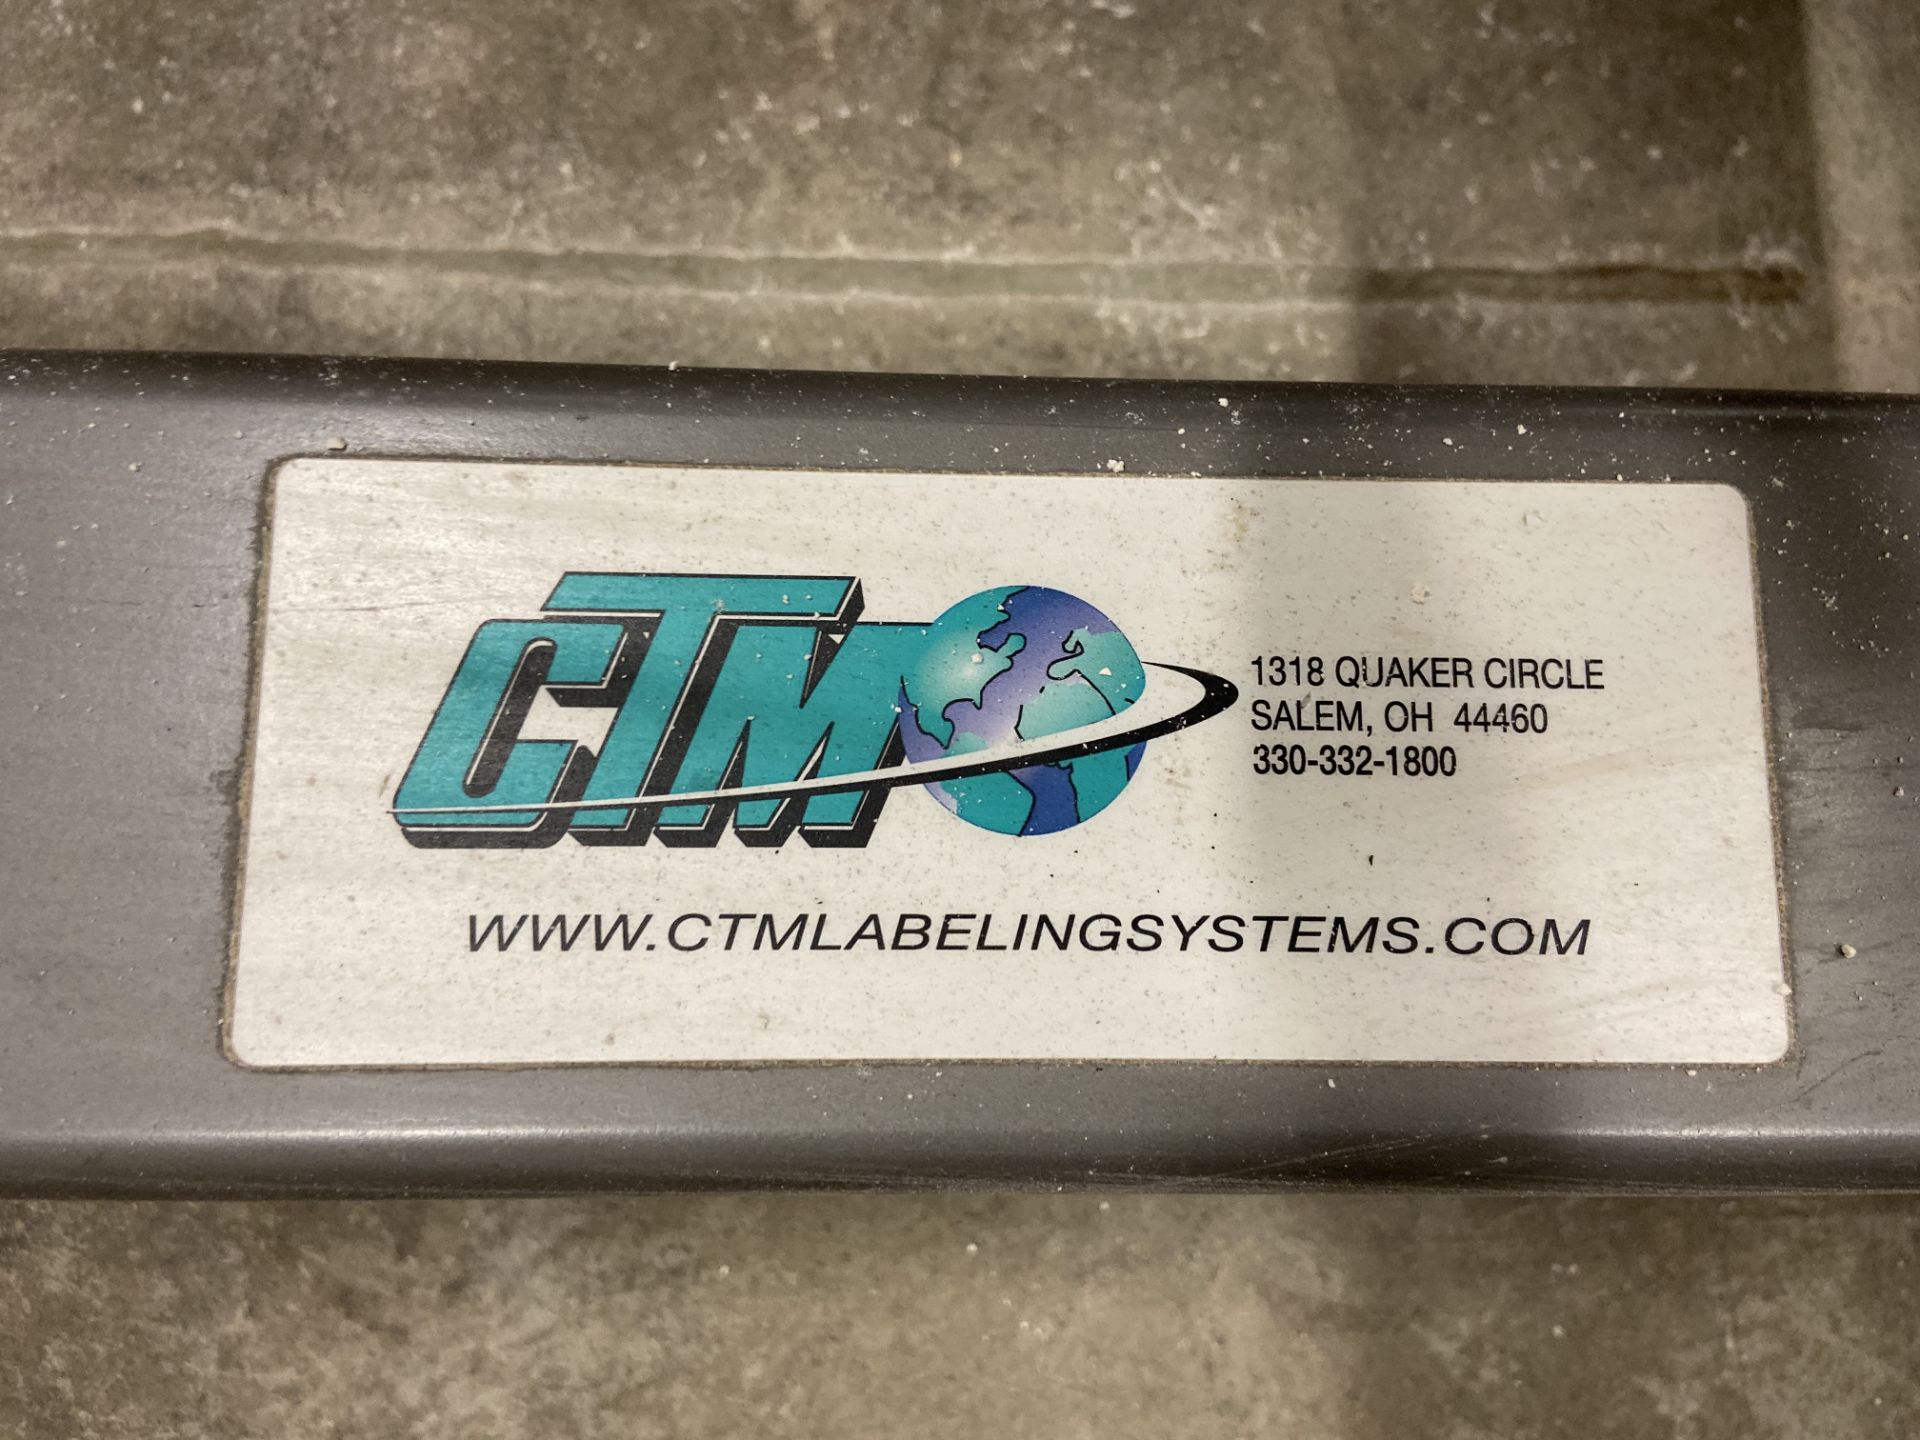 CTM Label Printer Applicator, Model# 1800-LT408, Serial# 1800-0027-1004 - Image 7 of 8